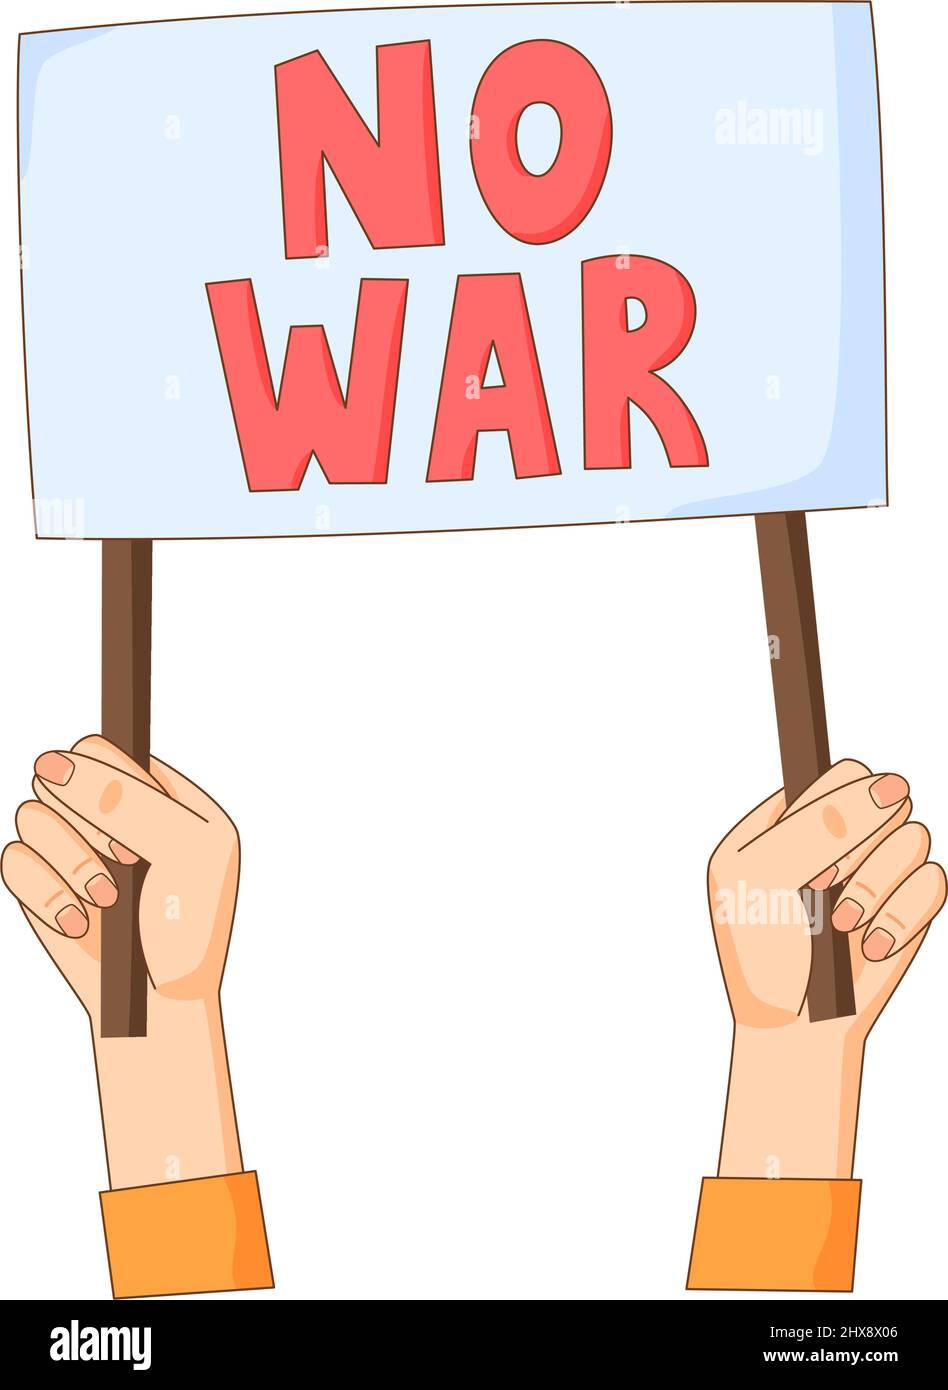 Hände ohne Kriegsbanner. Antikriegs- und pazifistische Bewegung Aktivist mit Zeichen. Friedensforderung. Vektor Stock Vektor